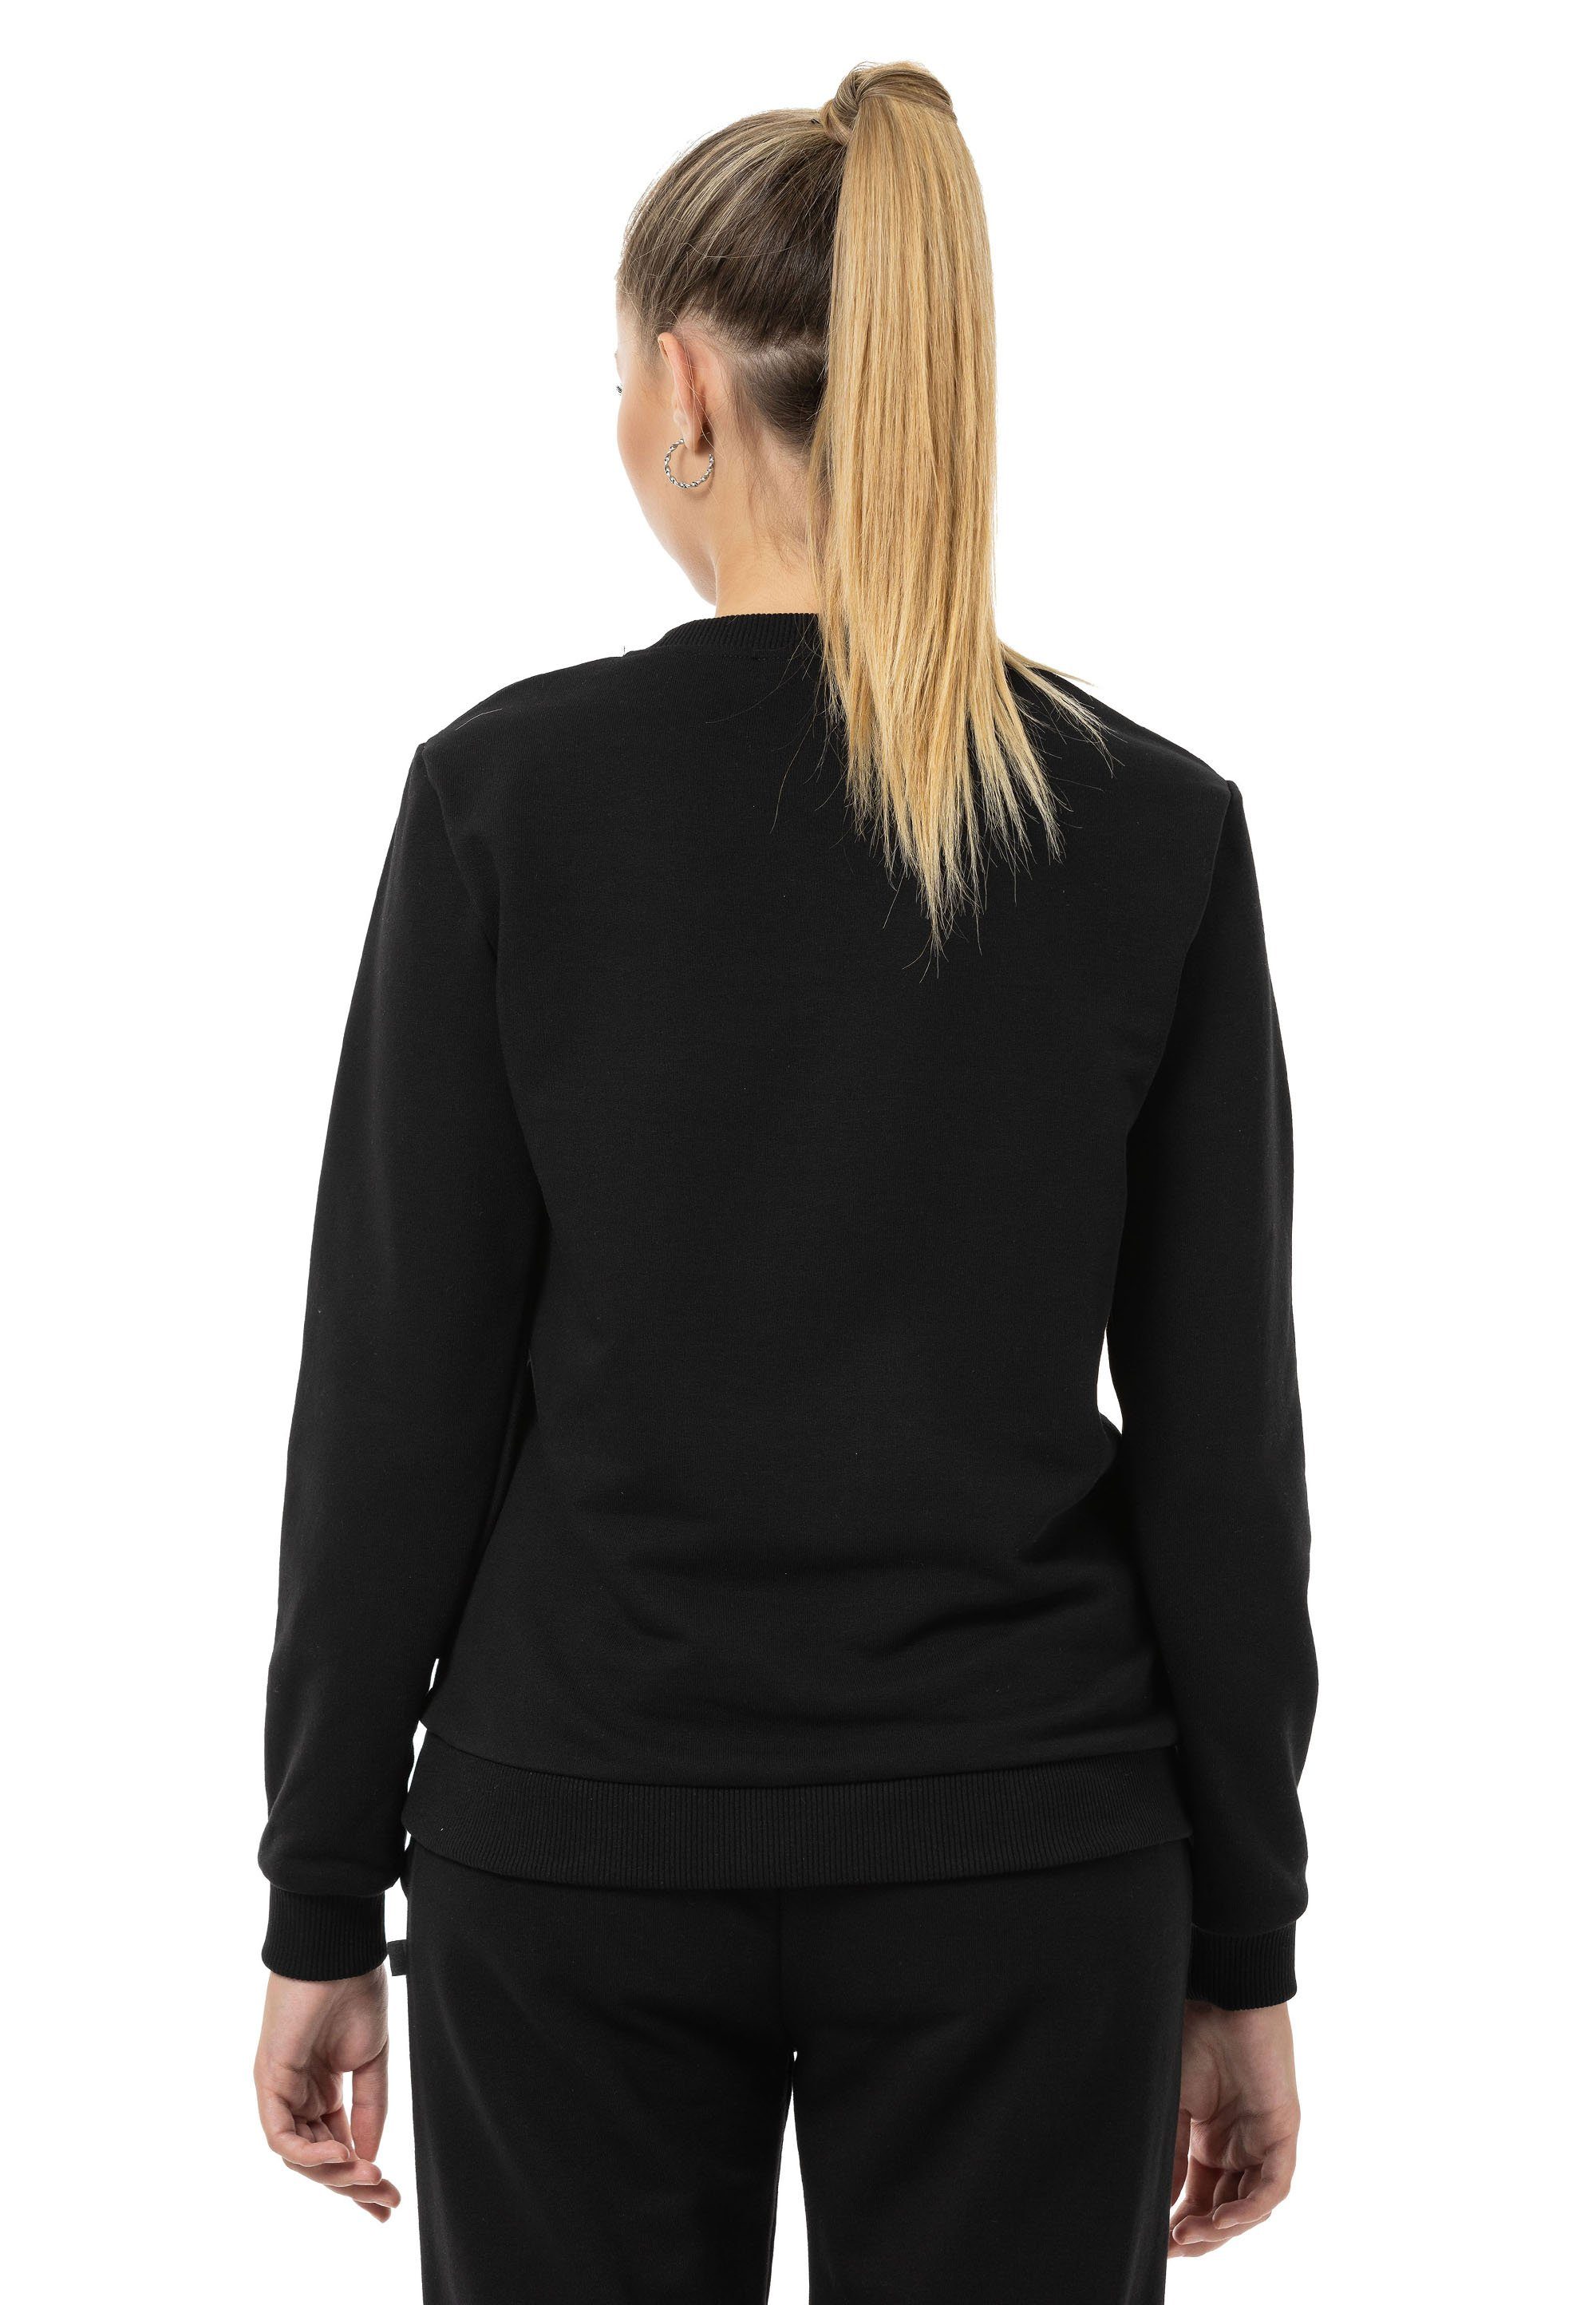 Schwarz Pullover Rundhals Premium RedBridge Sweatshirt Qualität